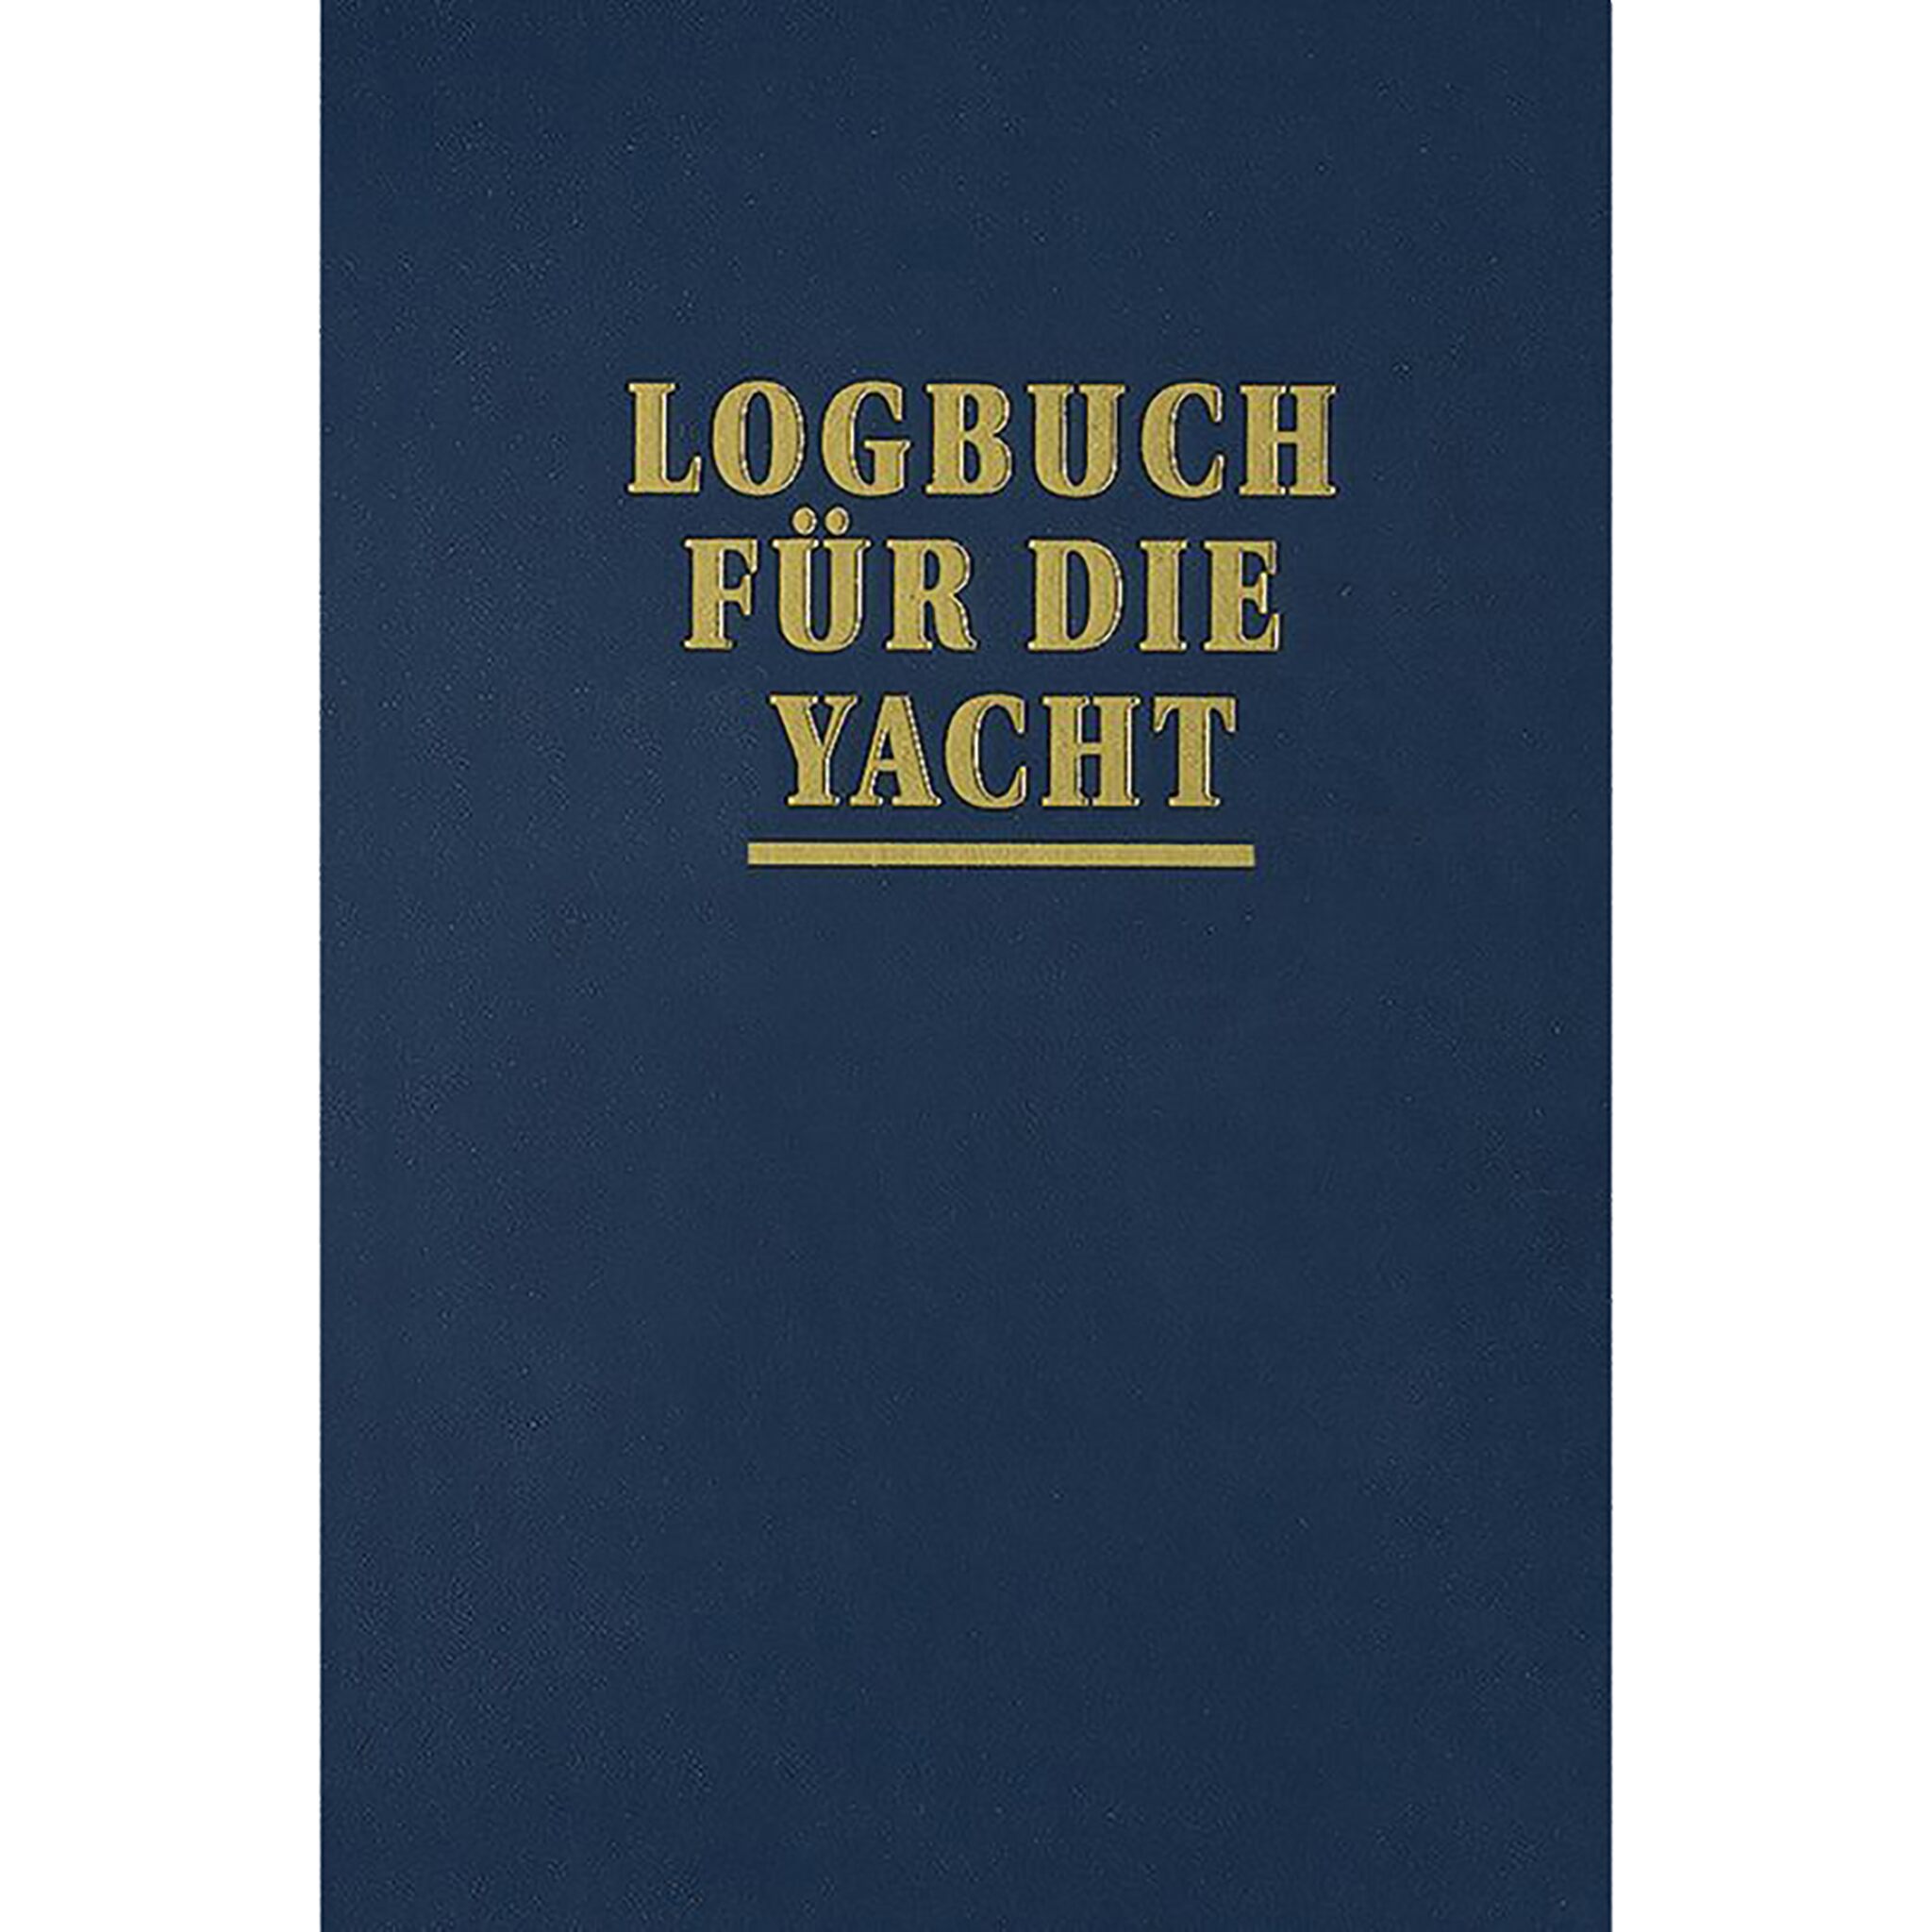 Logbuch für die Yacht